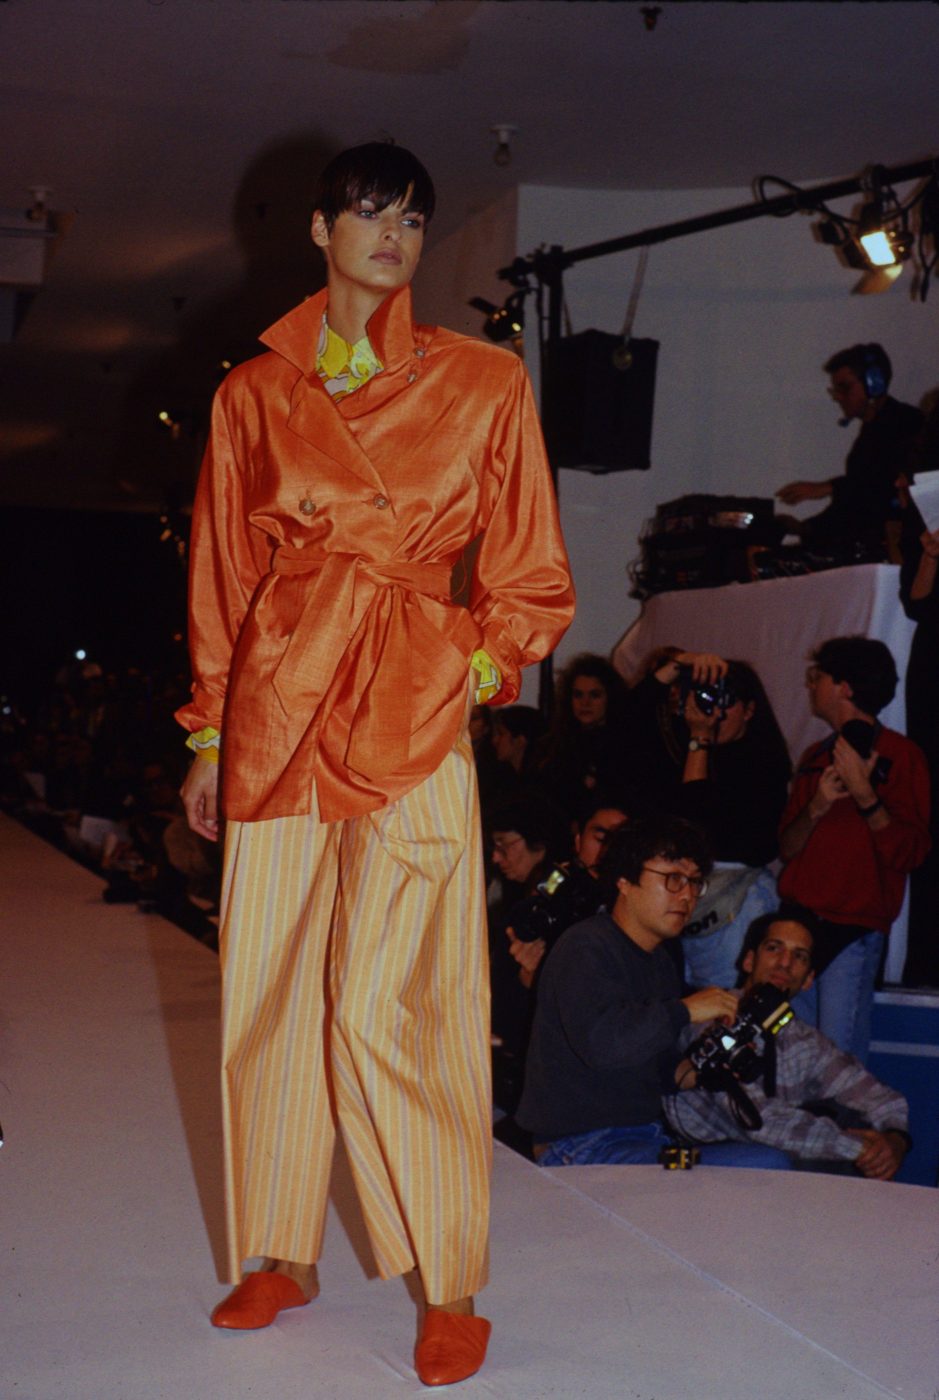 Linda Evangelista in a 1988 Isaac Mizrahi fashion show